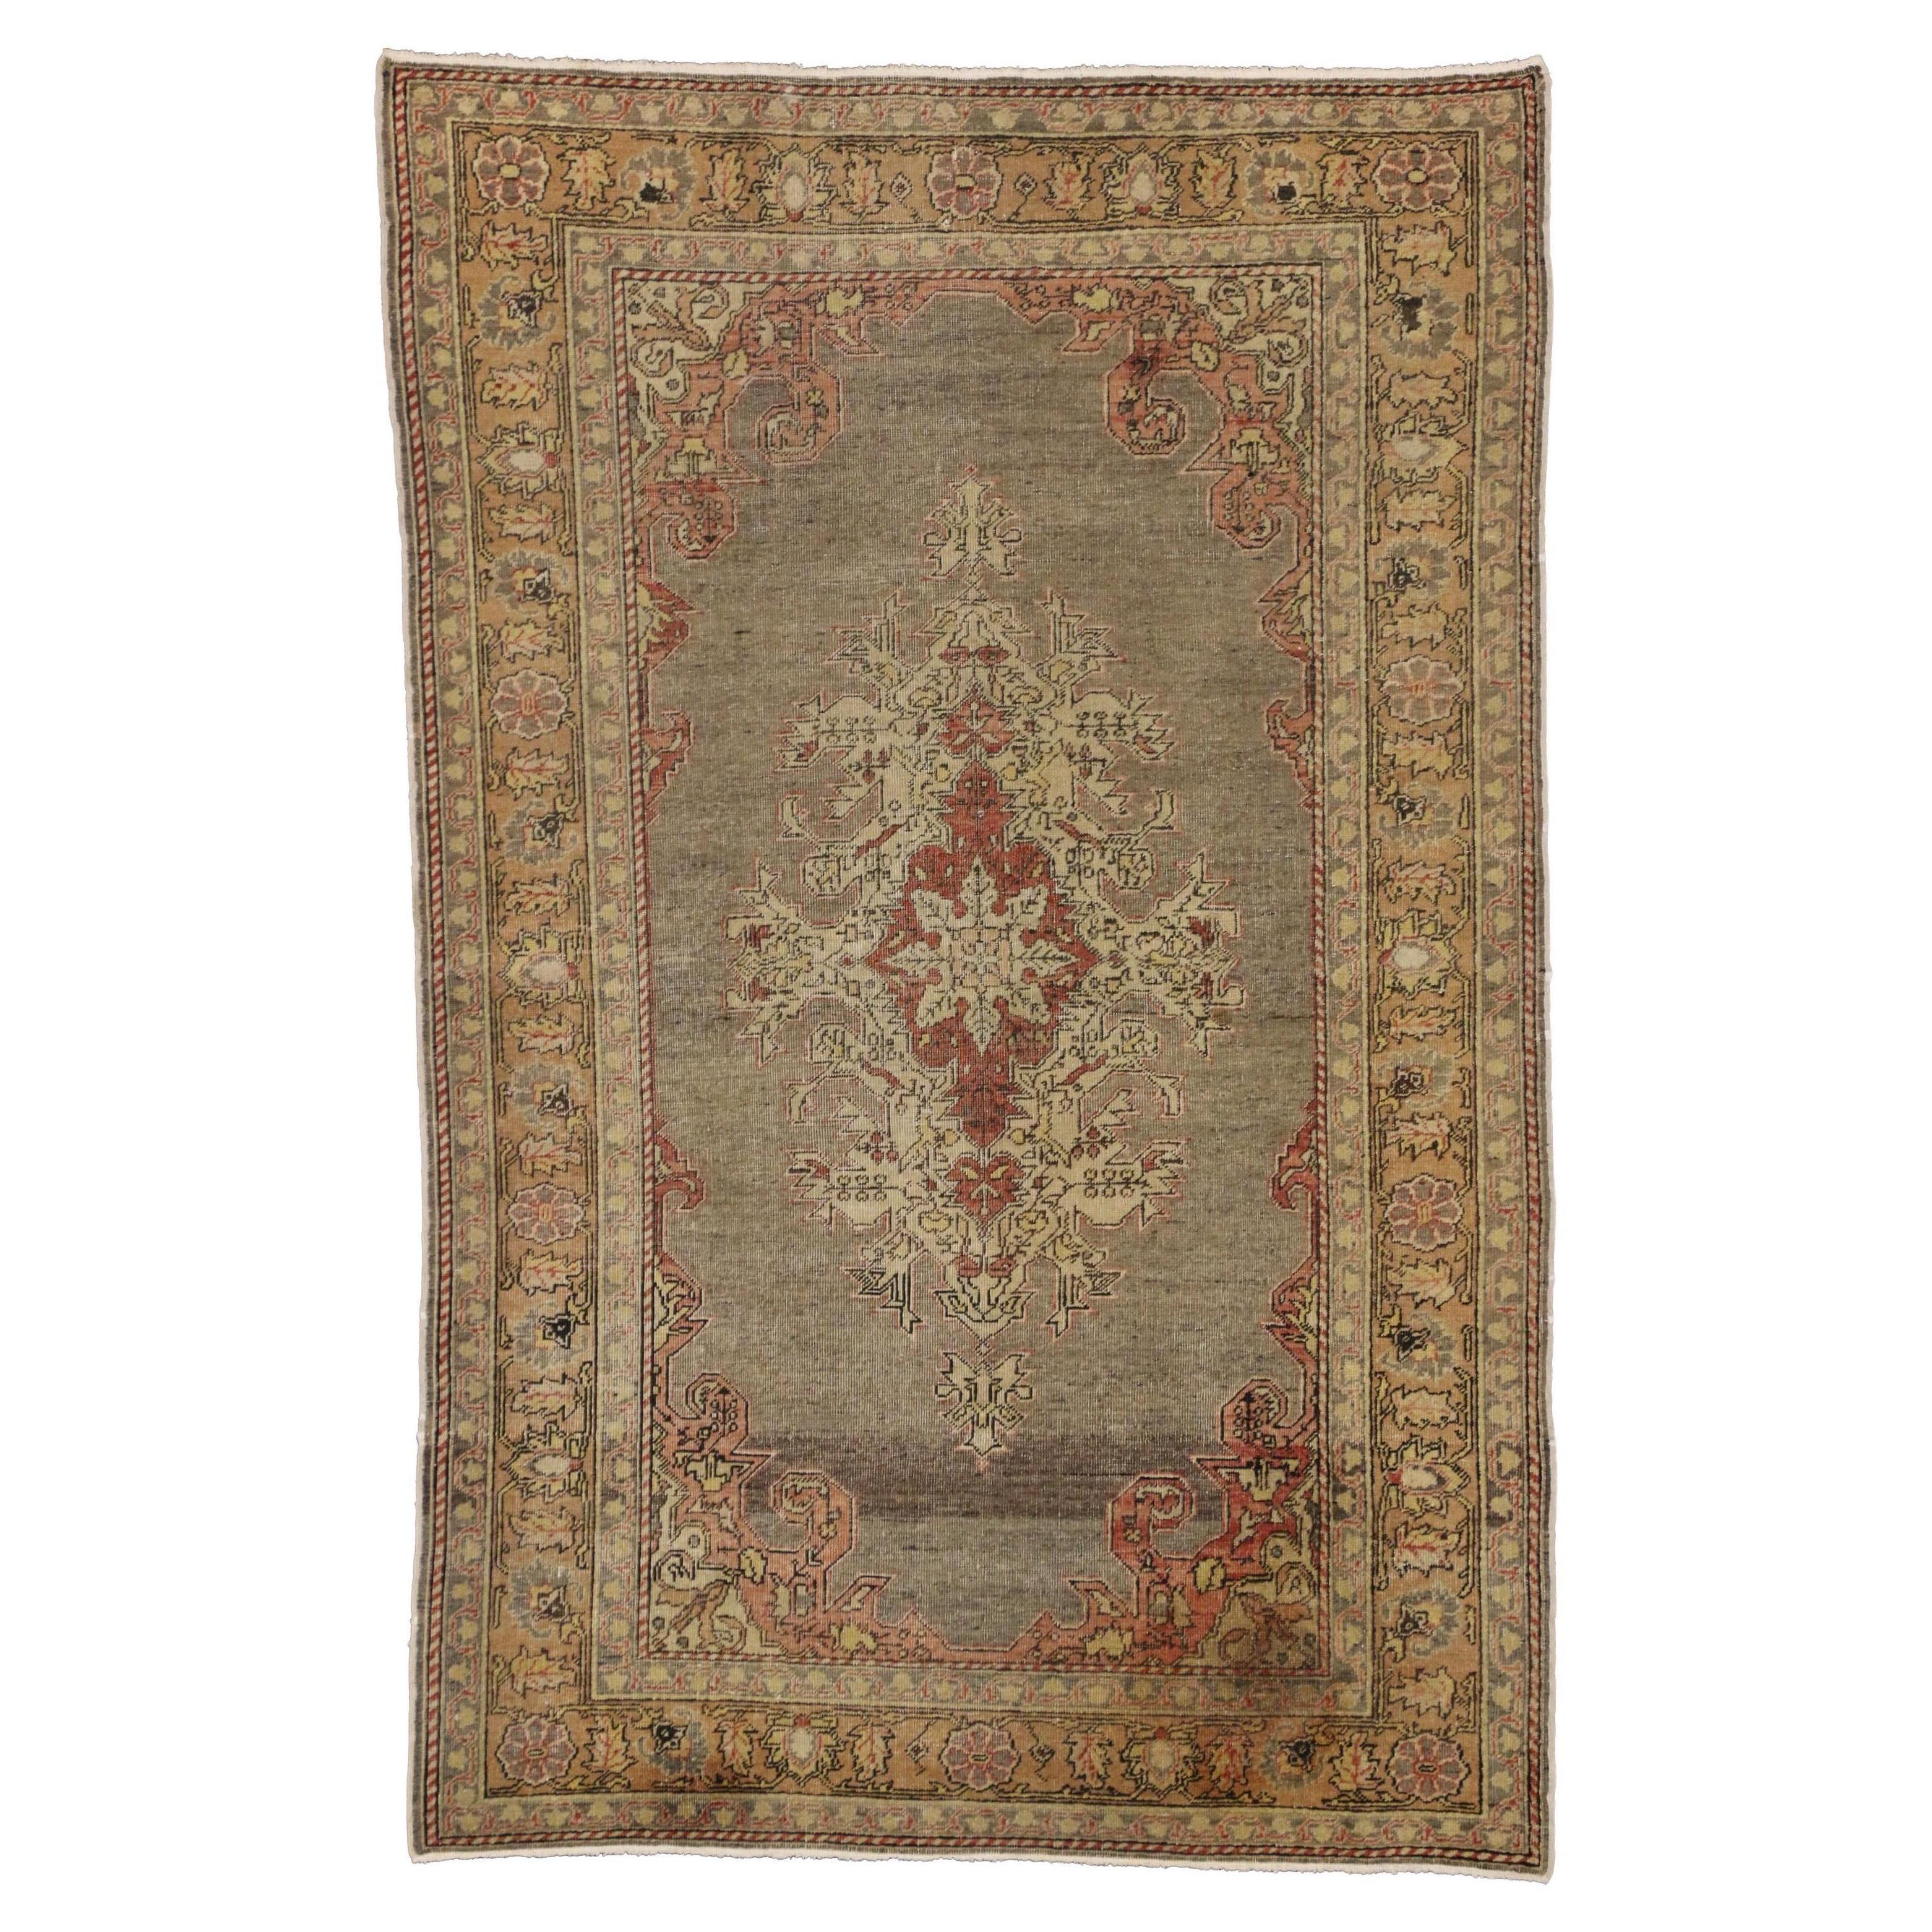 Ancien tapis turc Sivas ancien avec un style élégant et classique